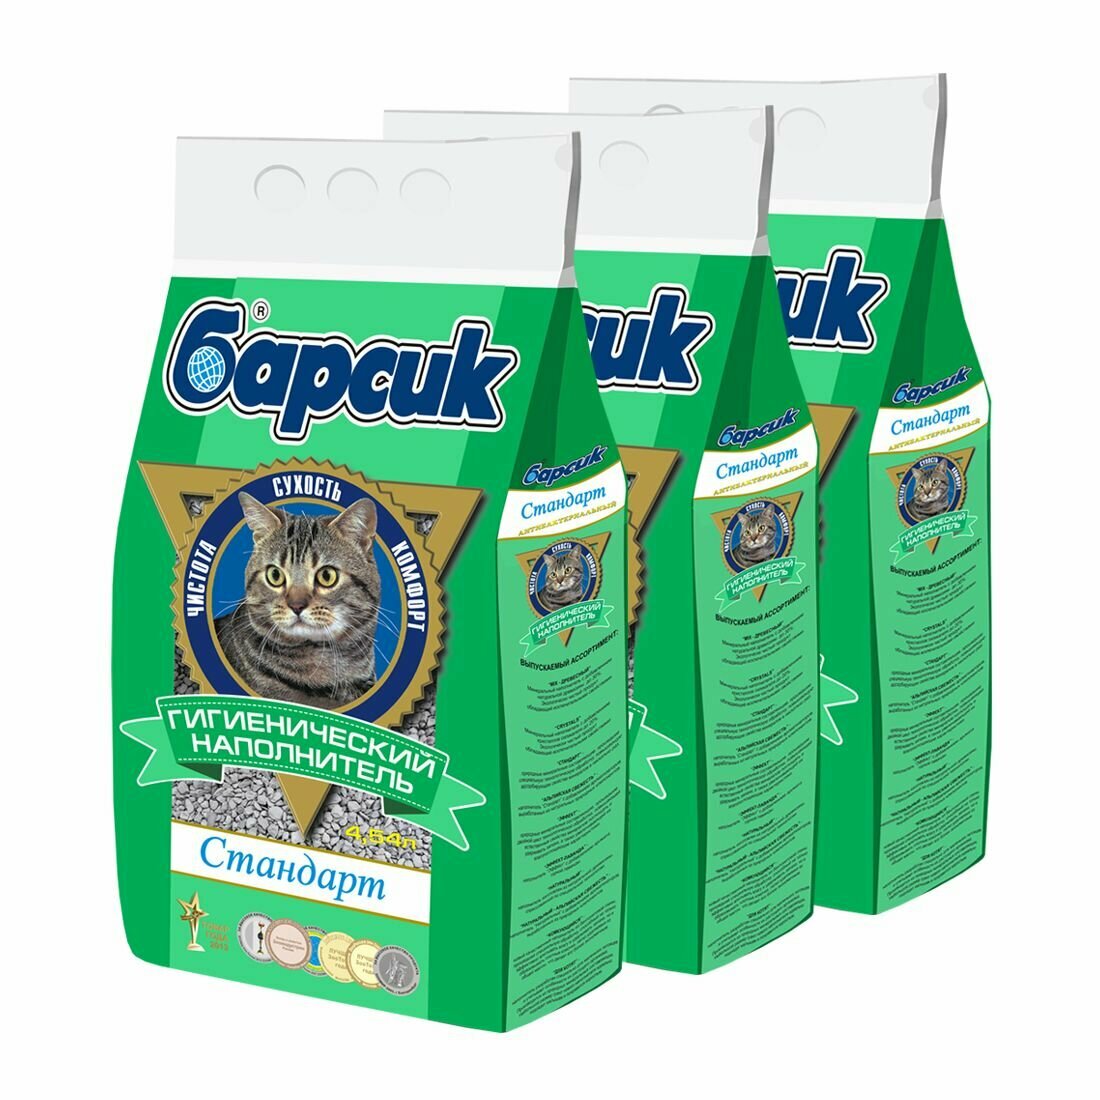 Наполнитель для кошачьего туалета барсик Стандарт гранулы 3 упаковки по 4.54 л